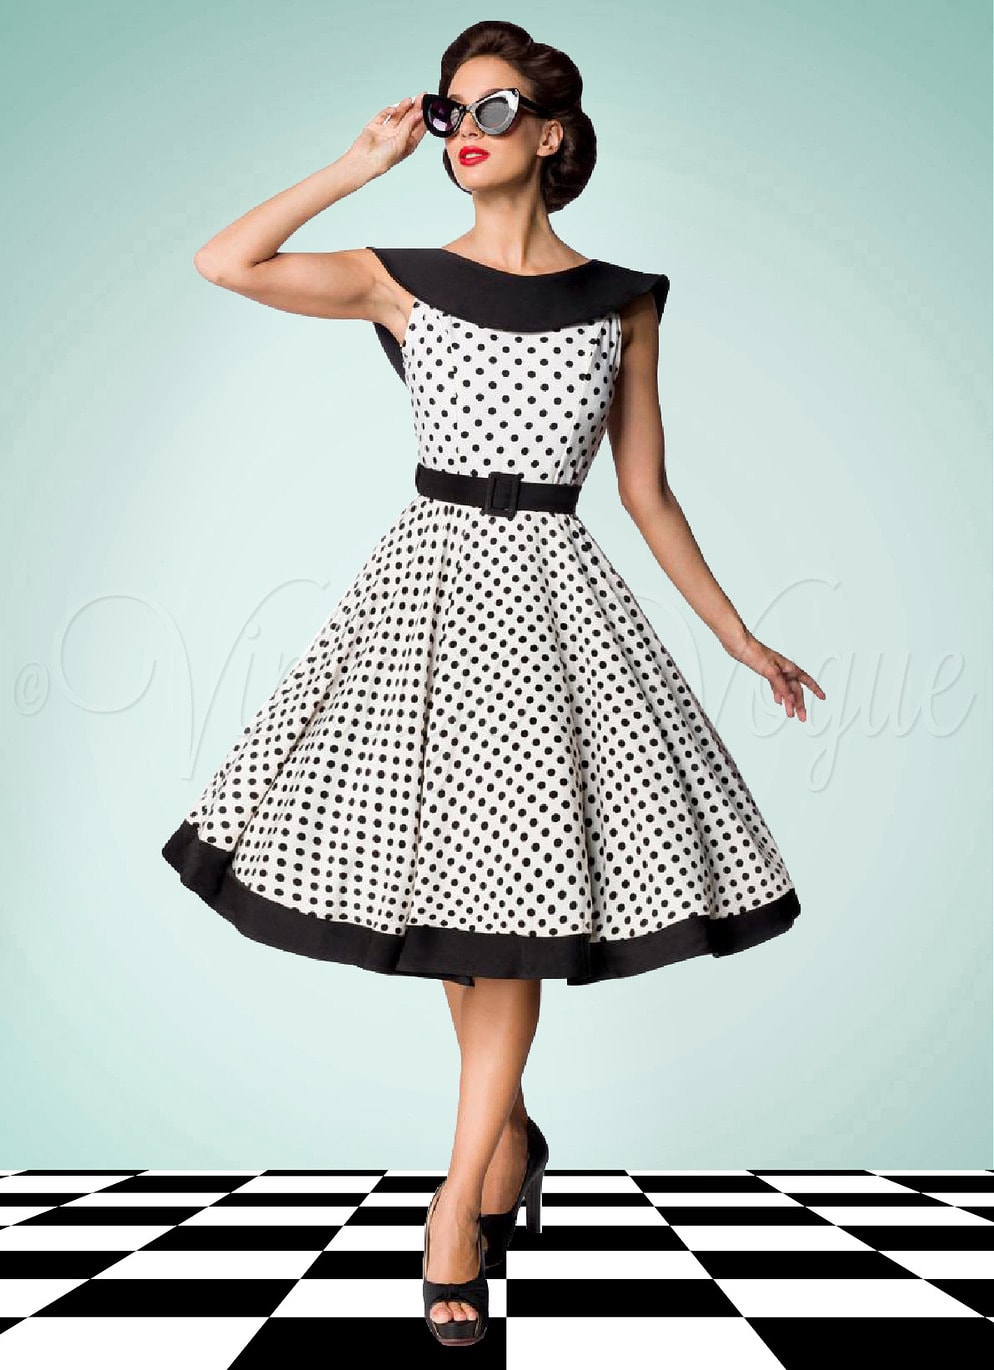 Belsira 50er Jahre Vintage Retro Swing Kleid mit Polka Punkte in Schwarz Weiß Petticoat Damen Damenkleid Rockabilly elegant Abendkleid Dots gepunktet tupfen Jive Lindy Hop